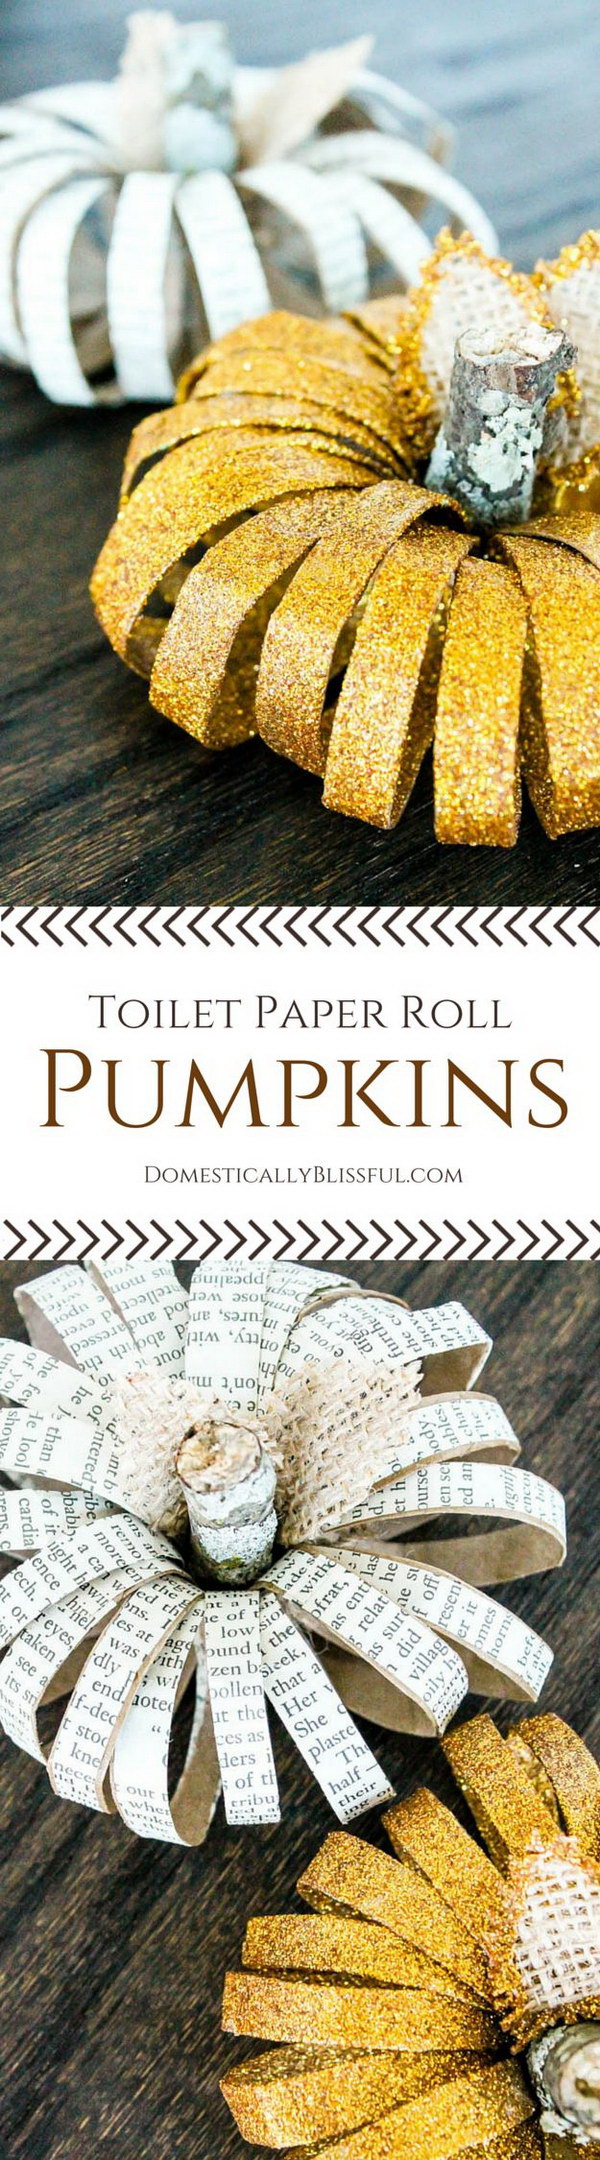 DIY Toilet Paper Roll Pumpkins 